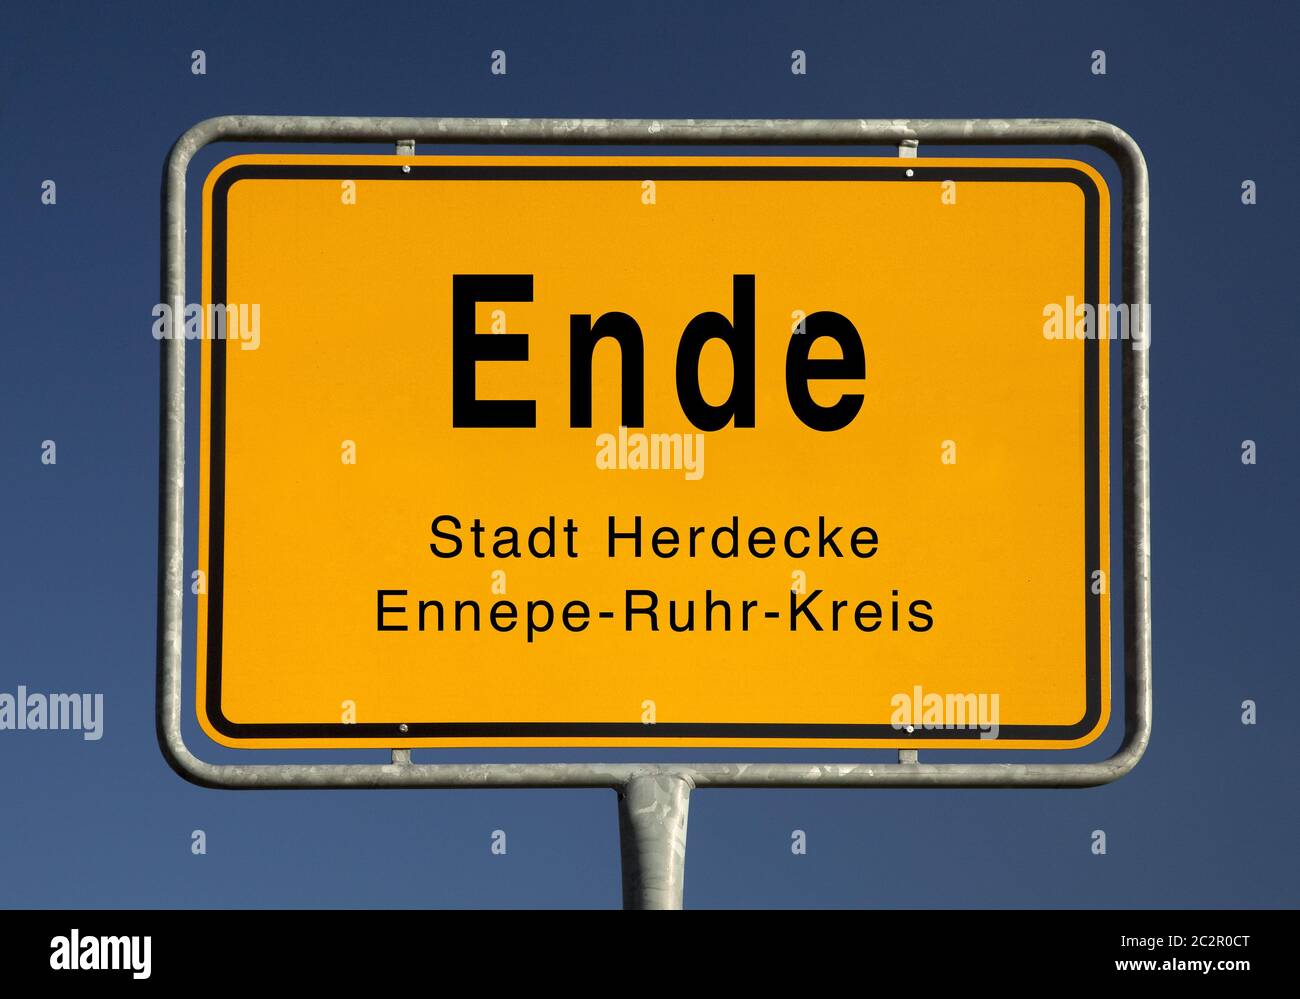 Ville signe de l'Ende, district Herdecke, district Ennepe-Ruhr, Rhénanie-du-Nord-Westphalie, Allemagne Banque D'Images